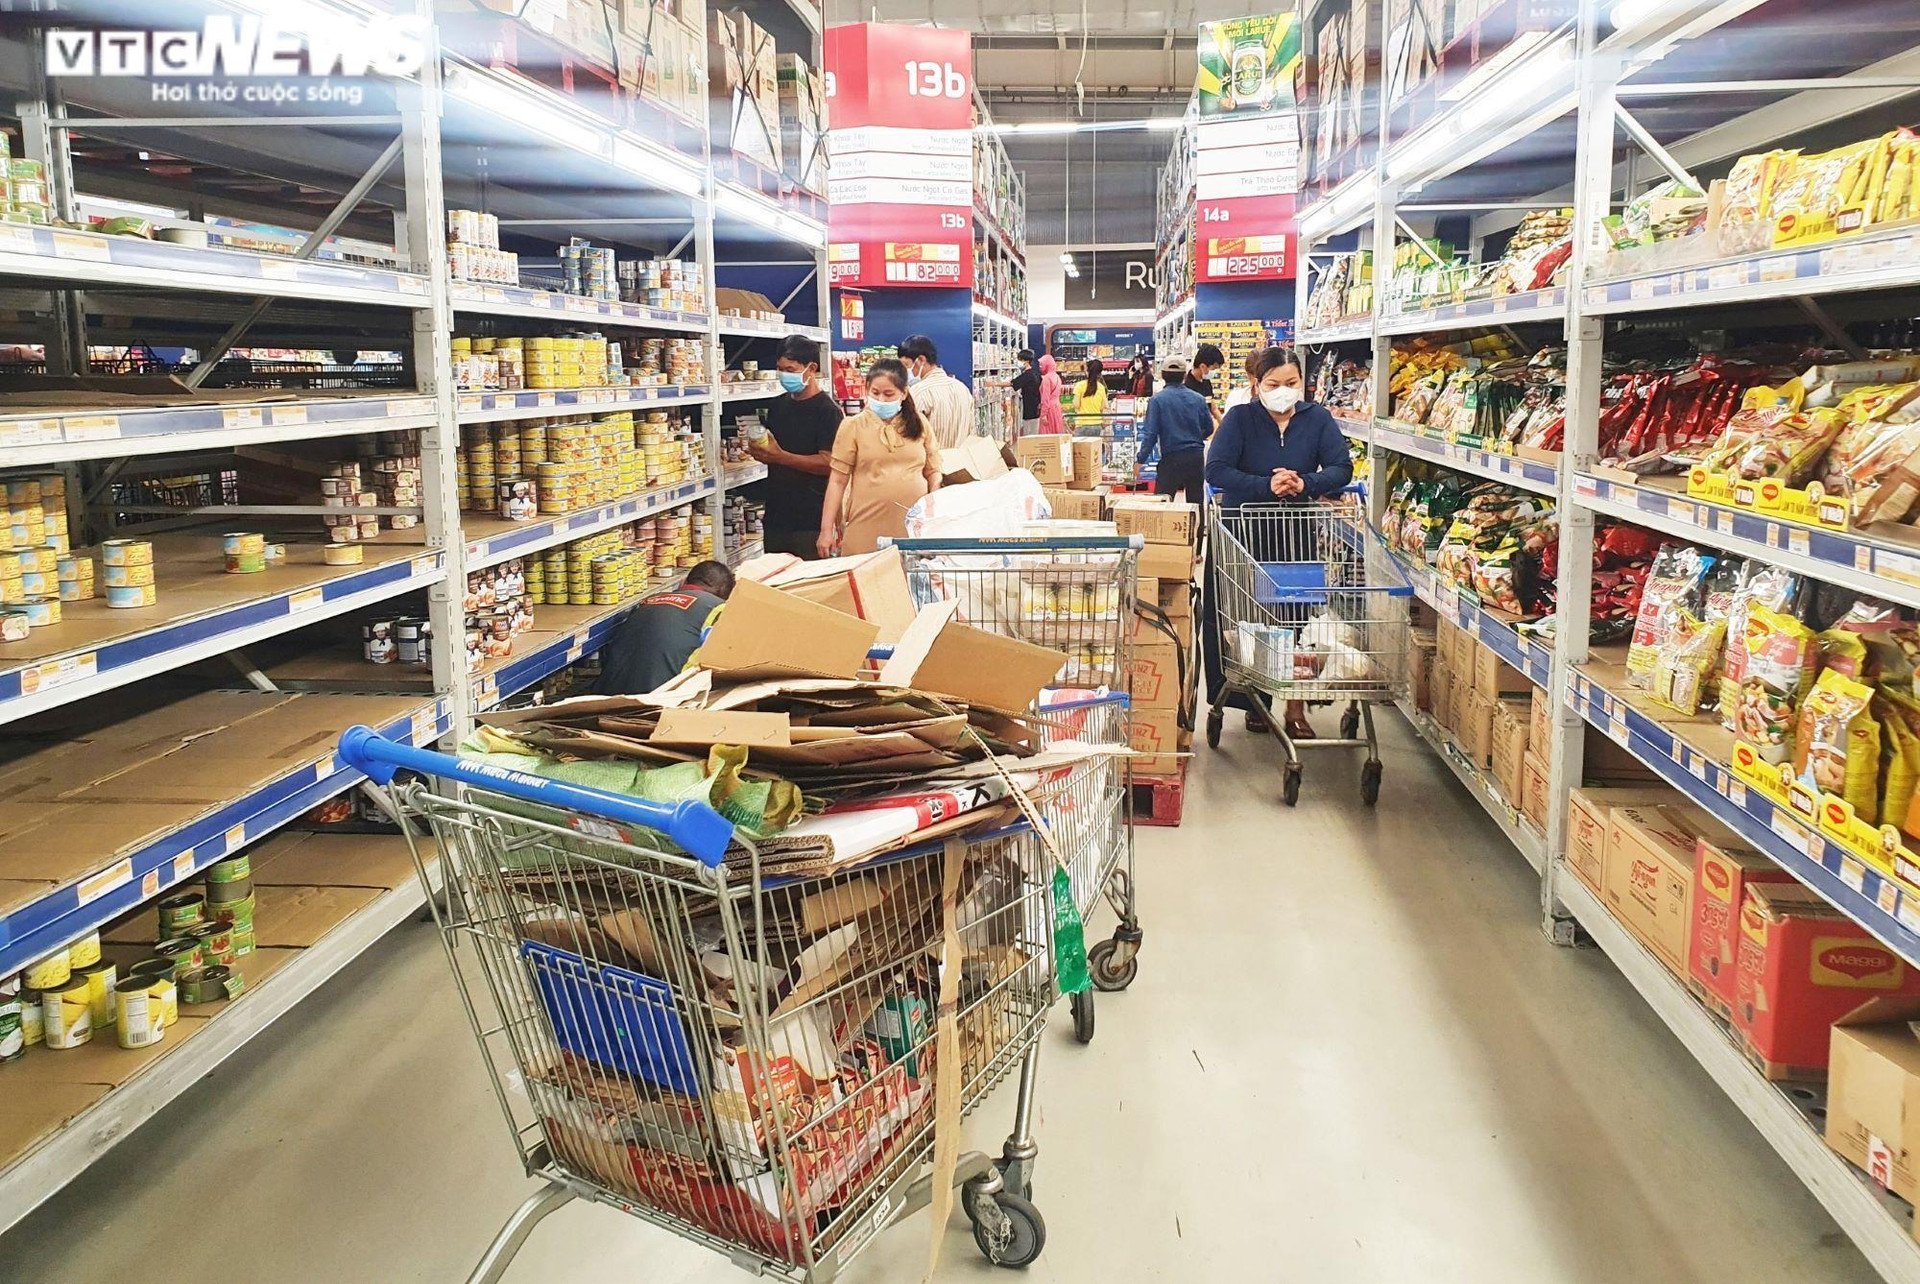 Đà Nẵng trước khi dừng mọi hoạt động 7 ngày: Chợ khan hàng, siêu thị ổn định - 2